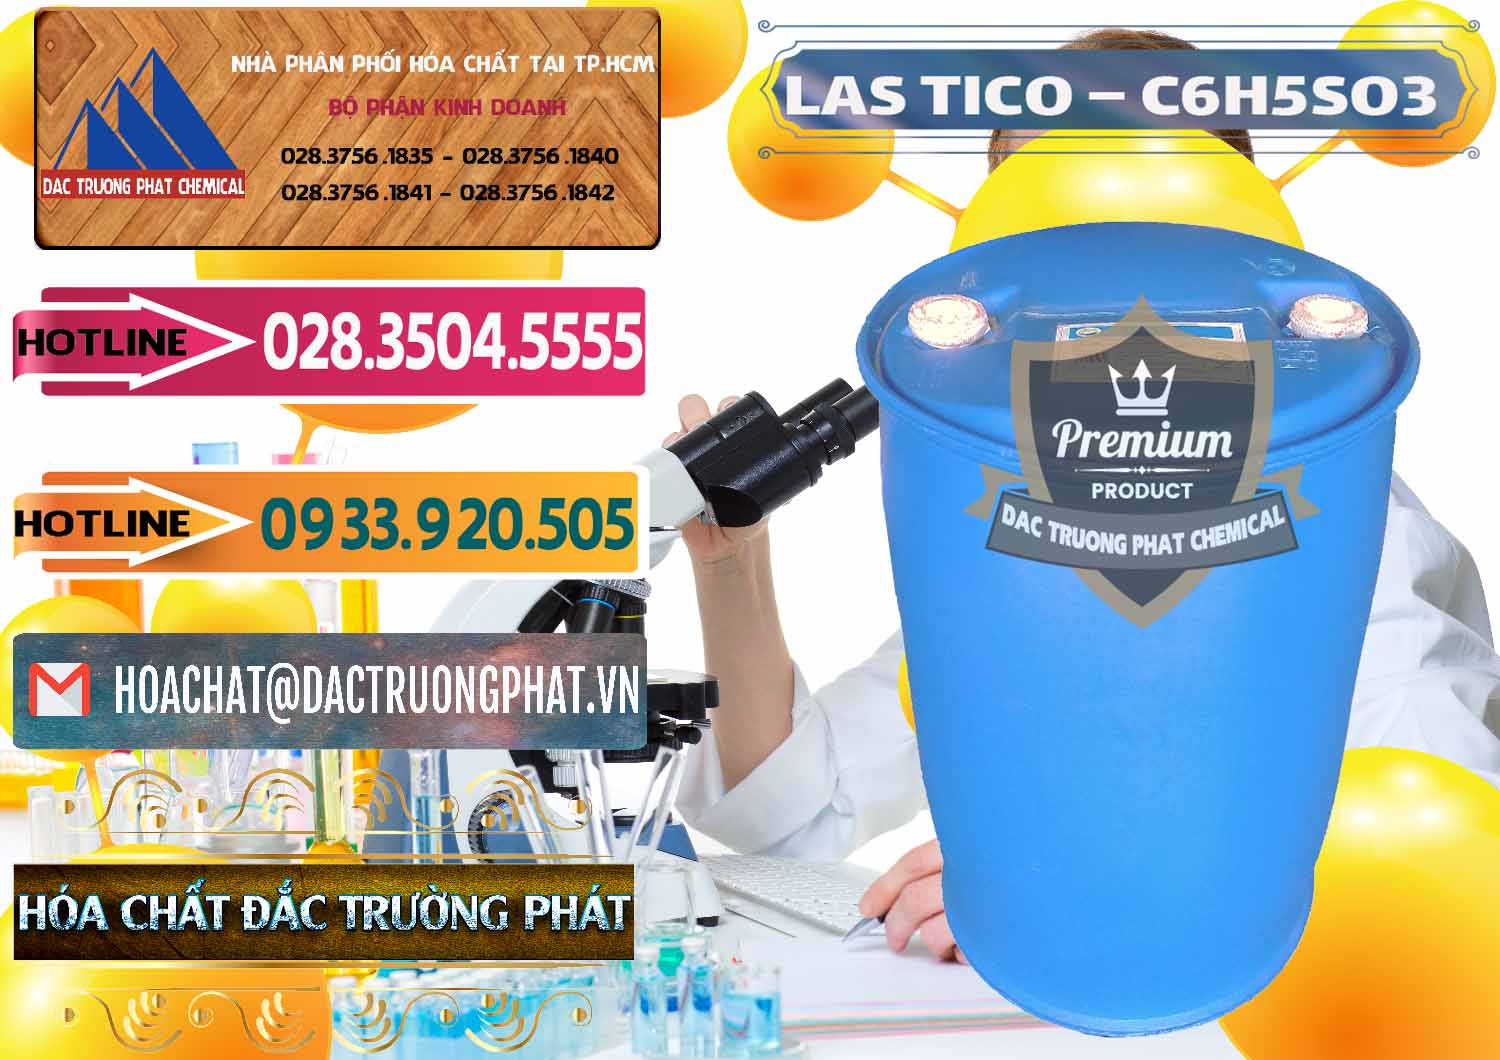 Cty chuyên kinh doanh và cung cấp Chất tạo bọt Las H Tico Việt Nam - 0190 - Công ty kinh doanh _ phân phối hóa chất tại TP.HCM - dactruongphat.vn